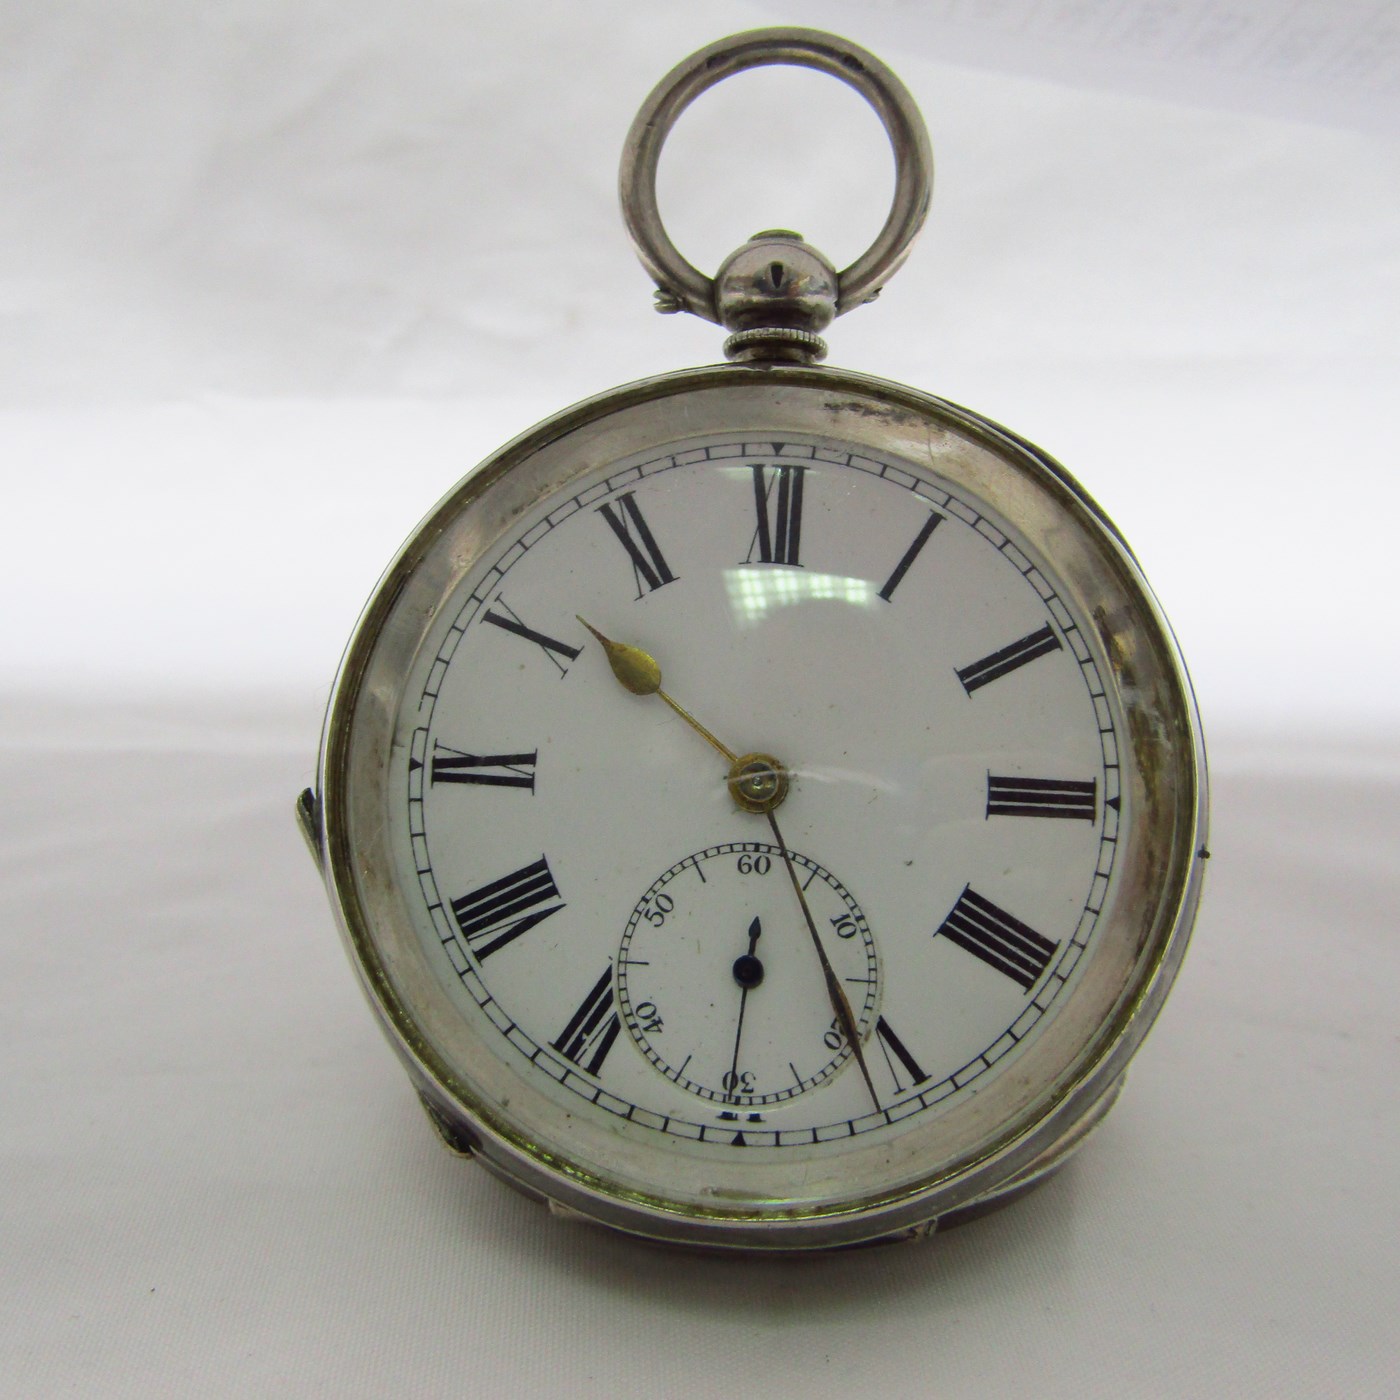 Reloj Suizo de Bolsillo, lepine. Ca. 1900.